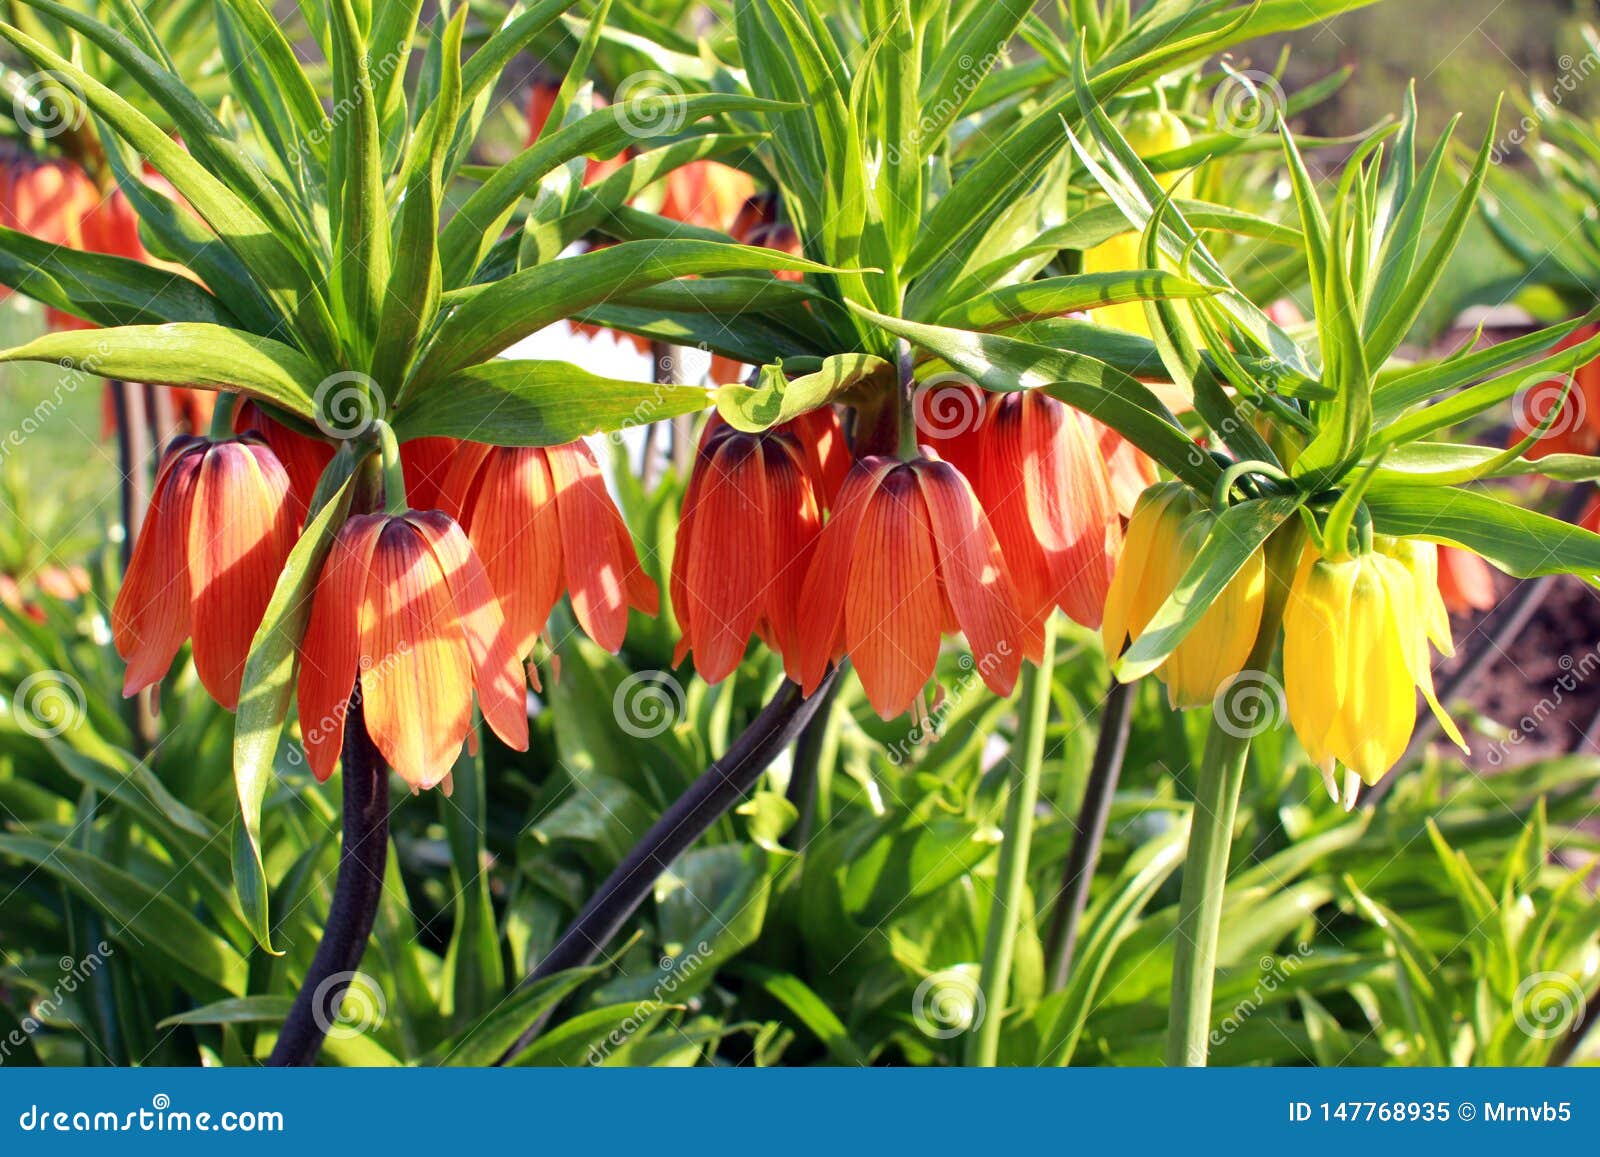 Stadscentrum Specifiek kleding De Mooie Oranje En Gele Bloemen Van Het Hazelaarhoen Eeuwigdurend Bolgewas  Stock Afbeelding - Image of summer, bloem: 147768935